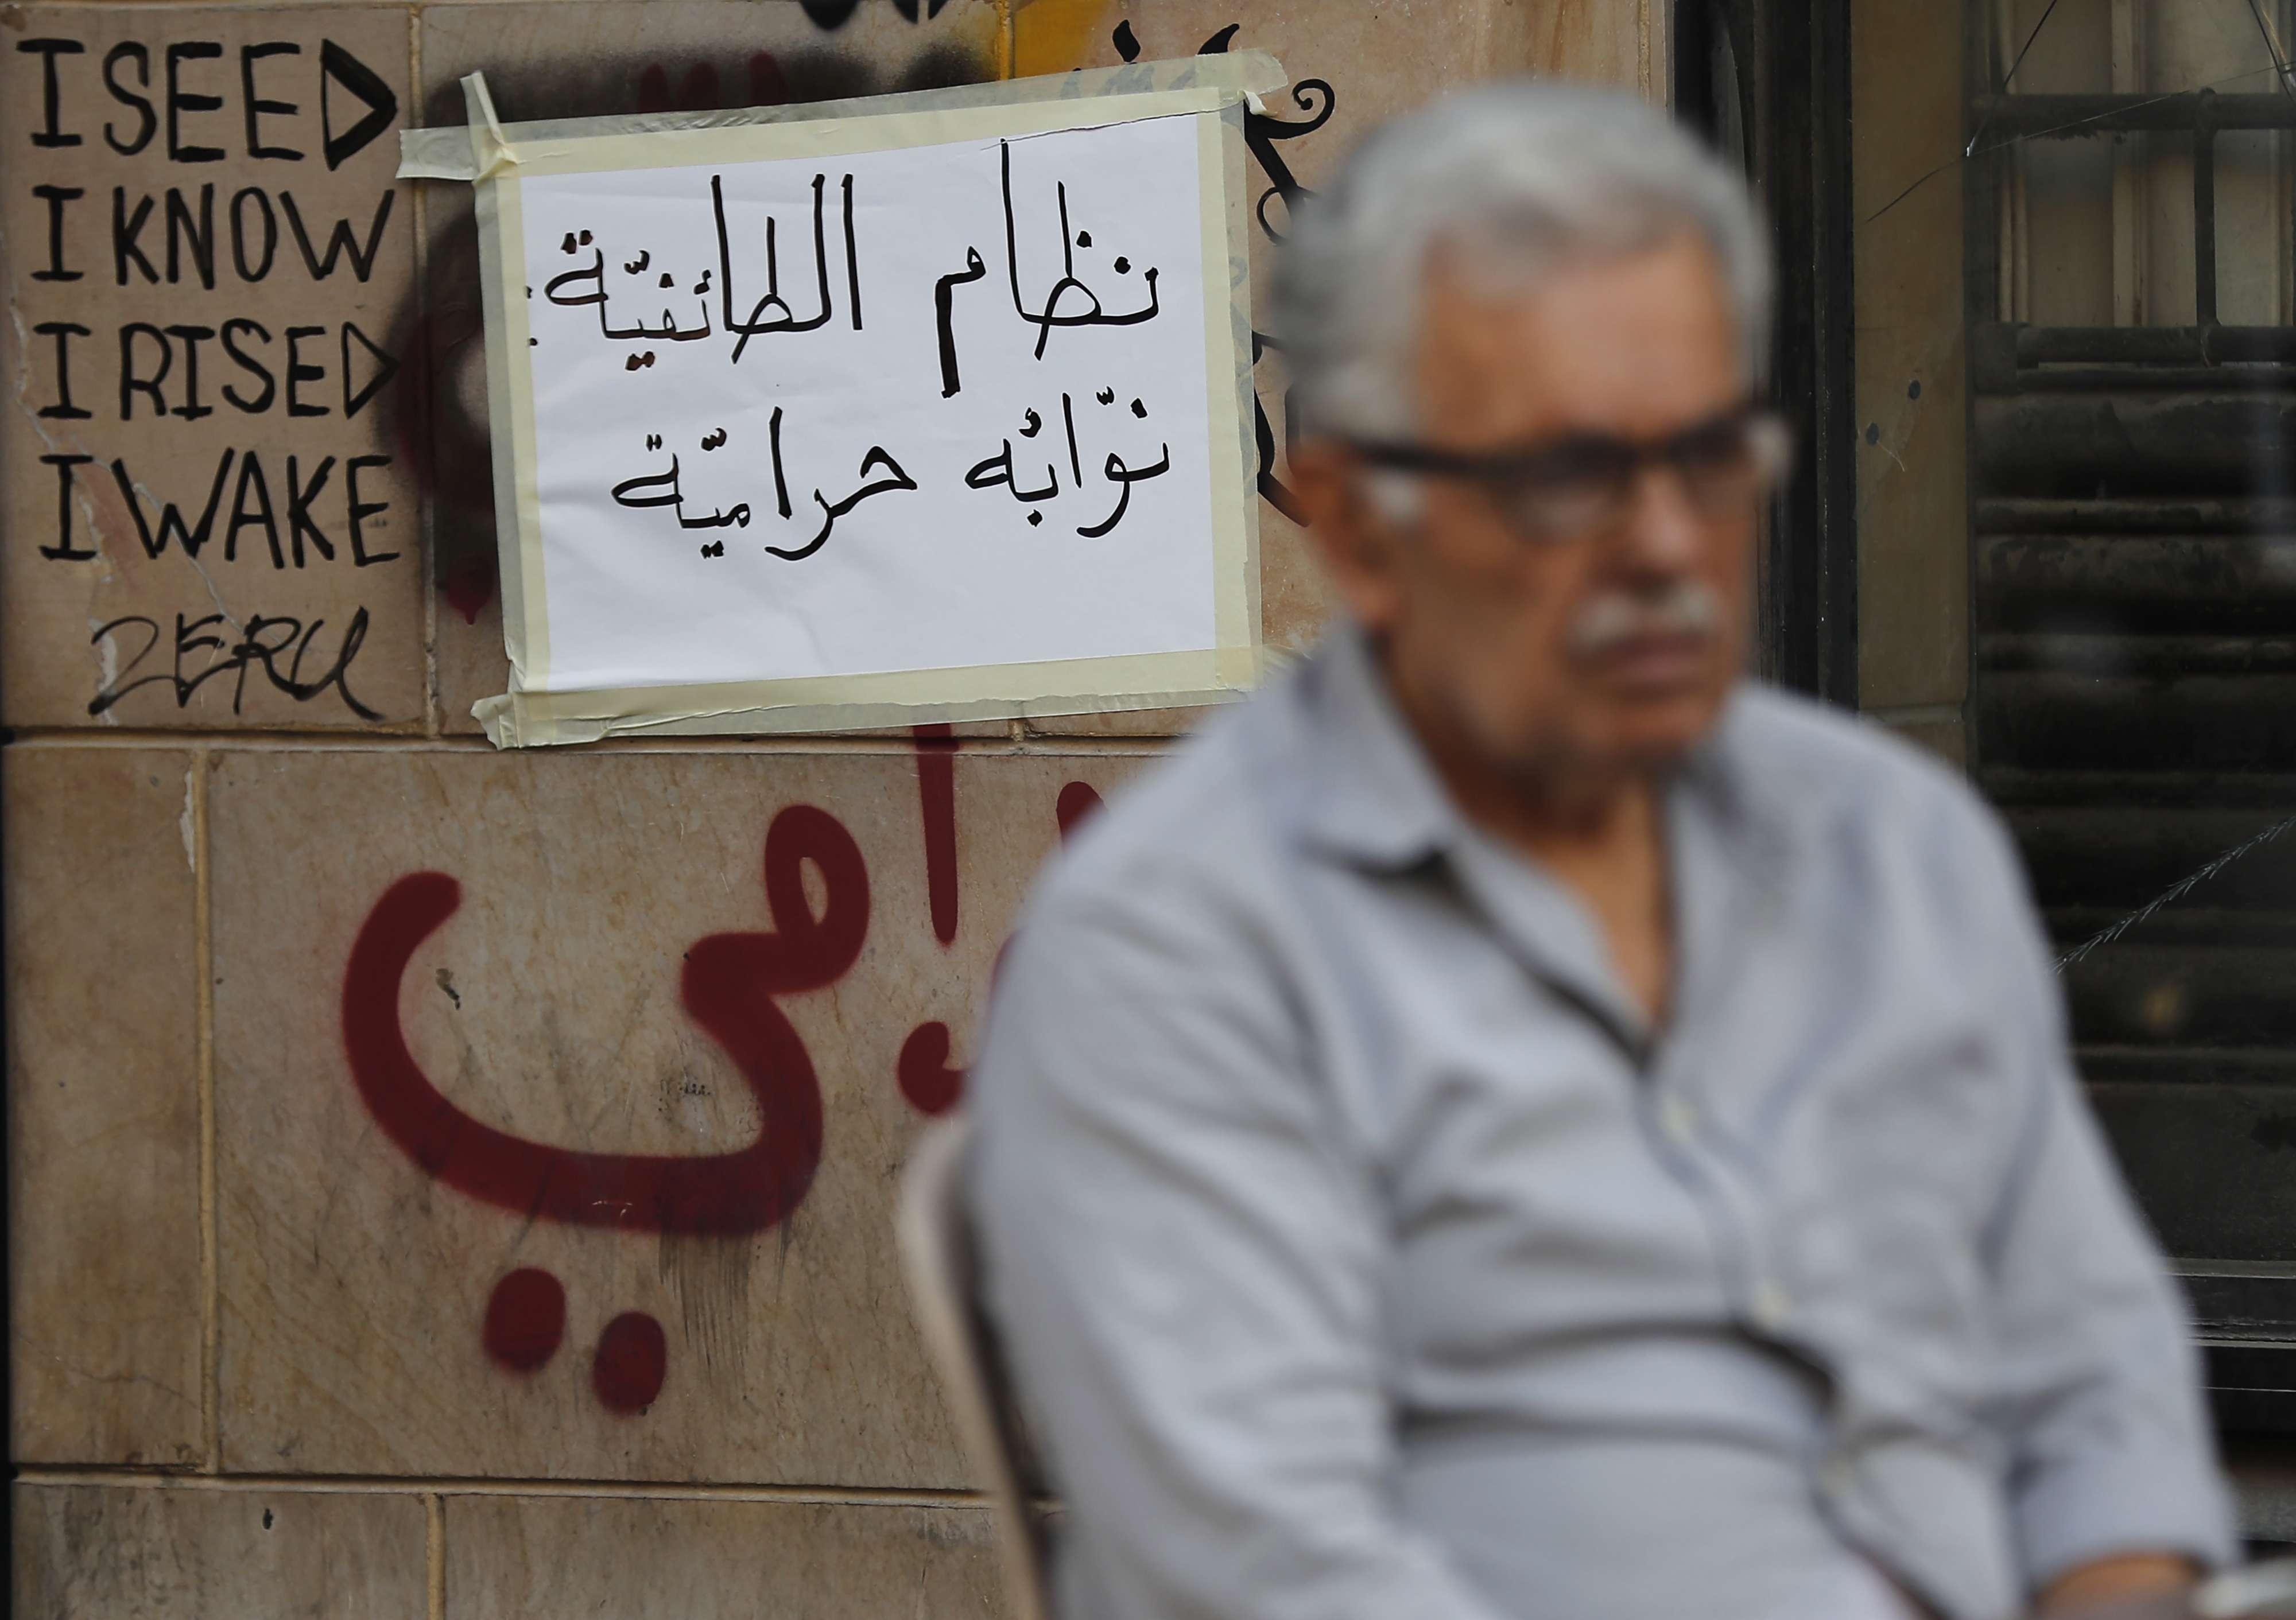 اللبنانيون سئموا من النظام الطائفي وتبعاته على اوضاعهم الاقتصادية